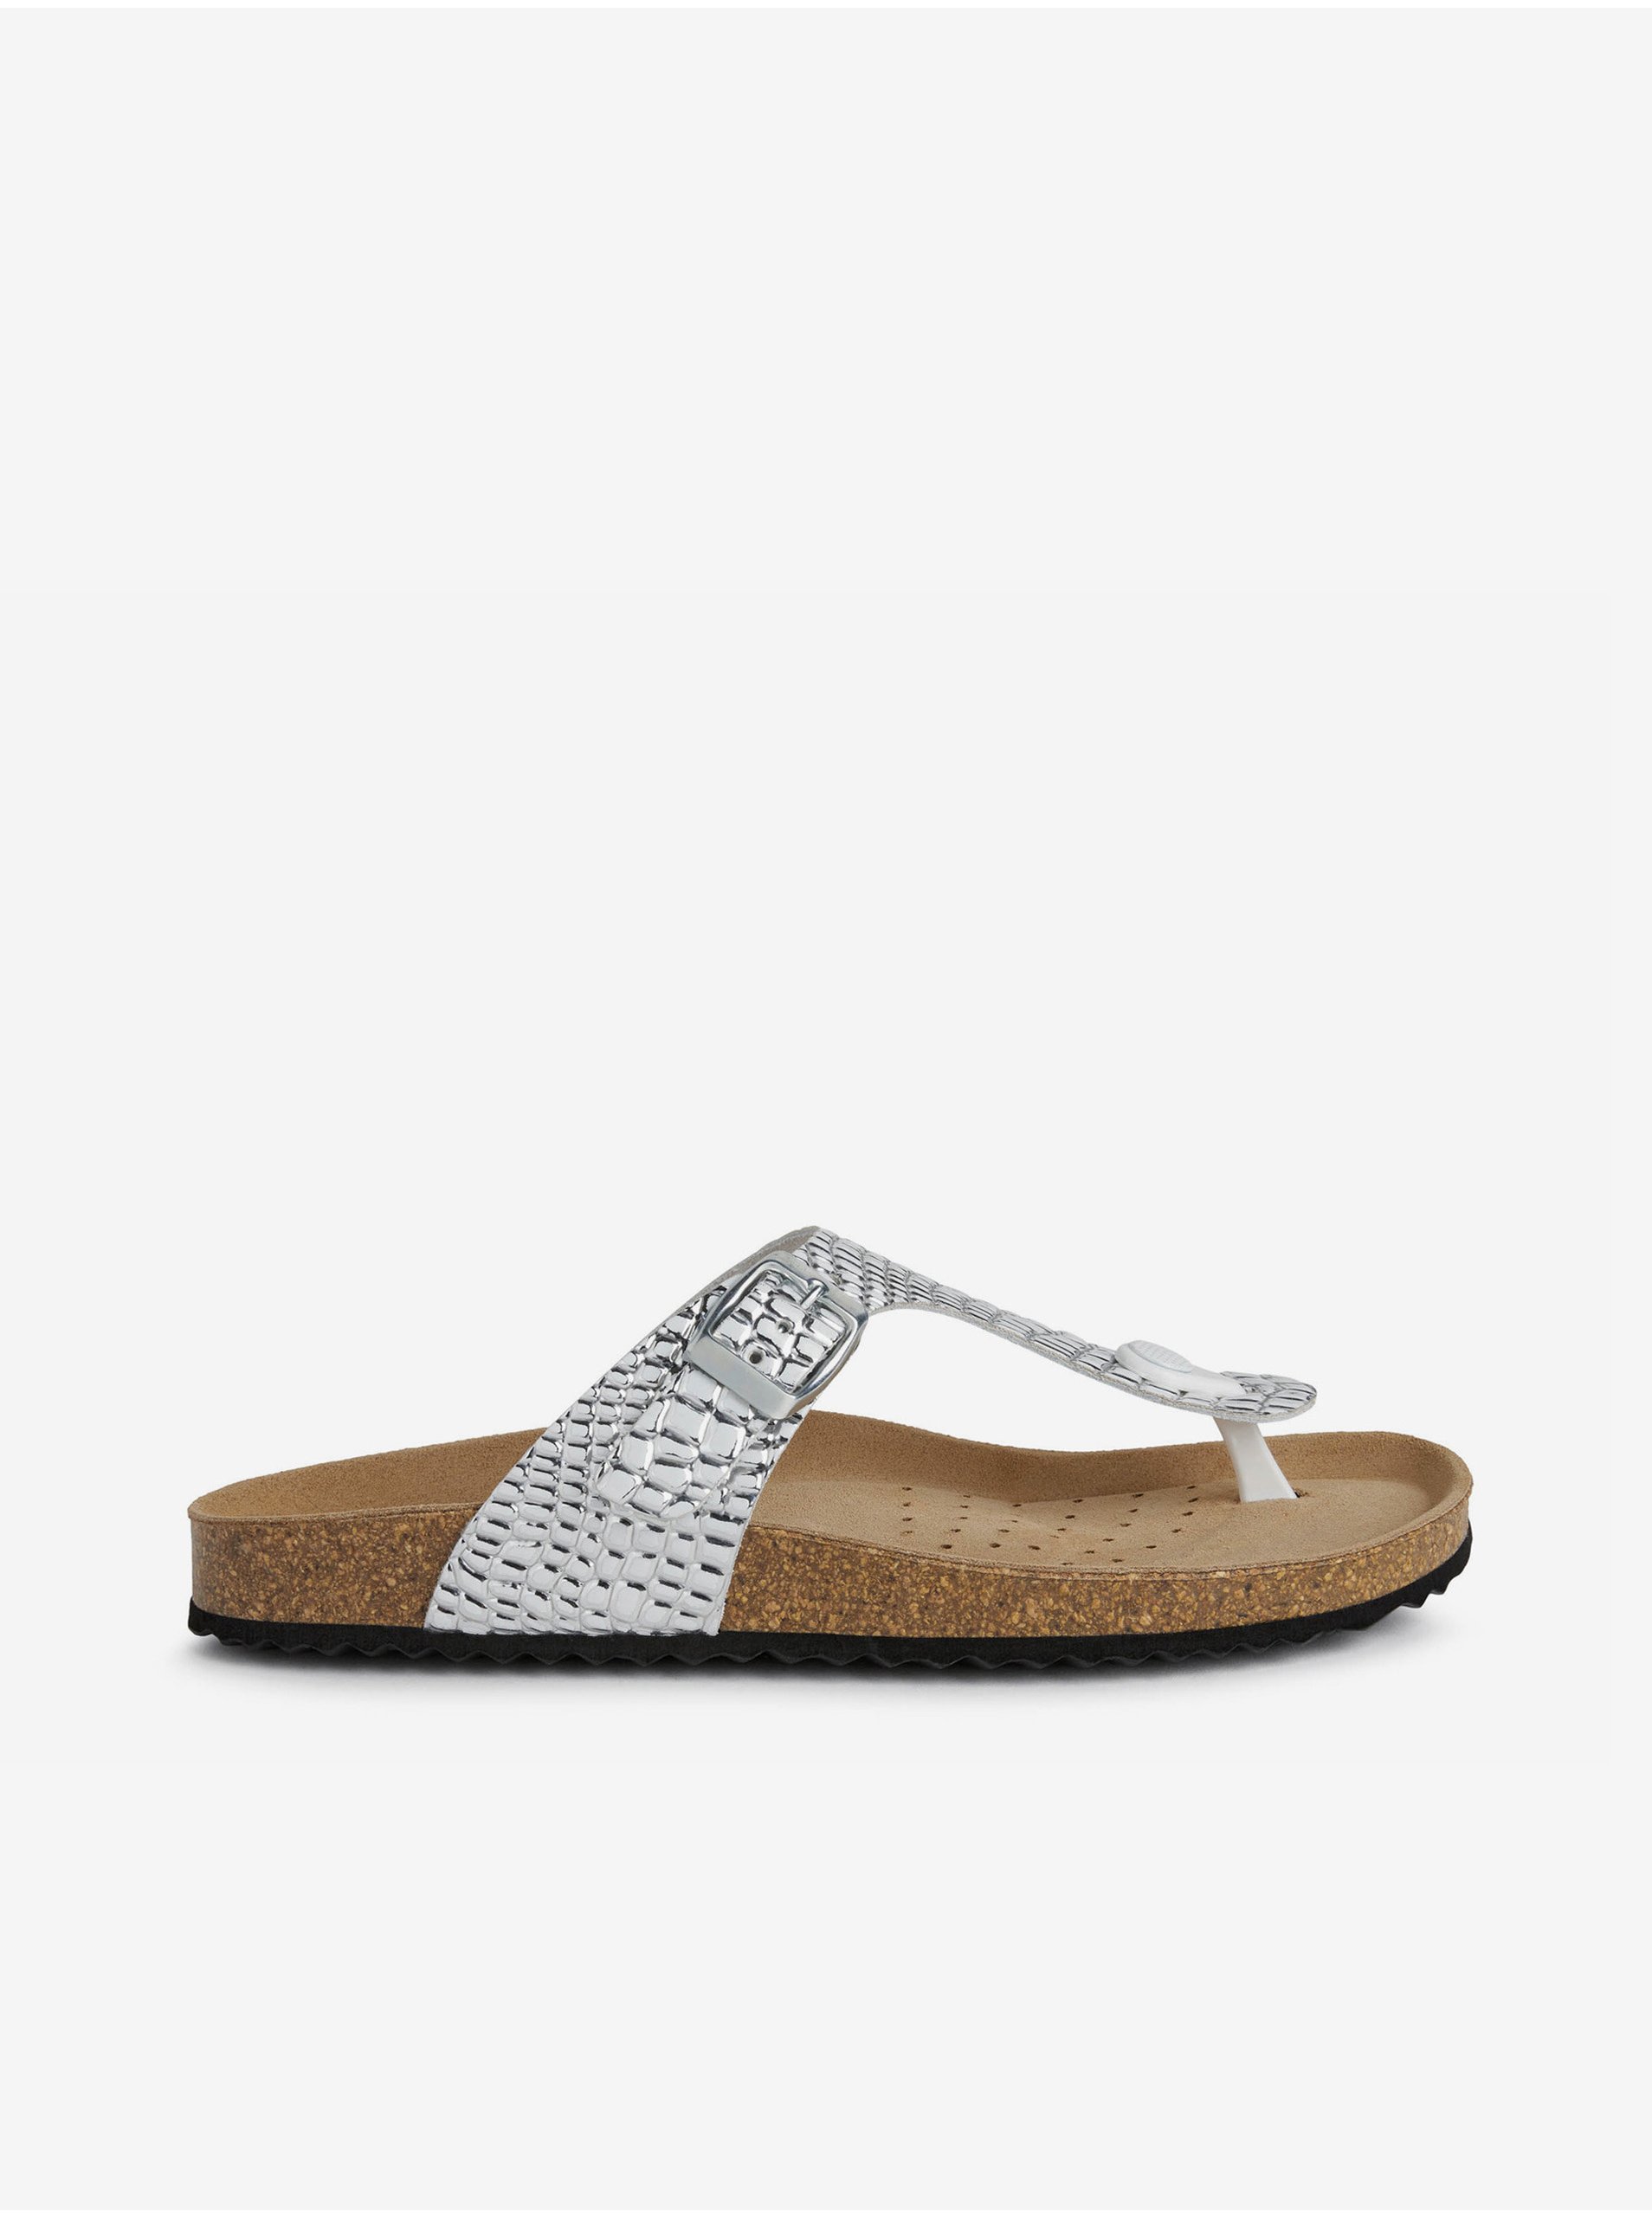 E-shop Dámské kožené pantofle ve stříbrné barvě Geox Brionia